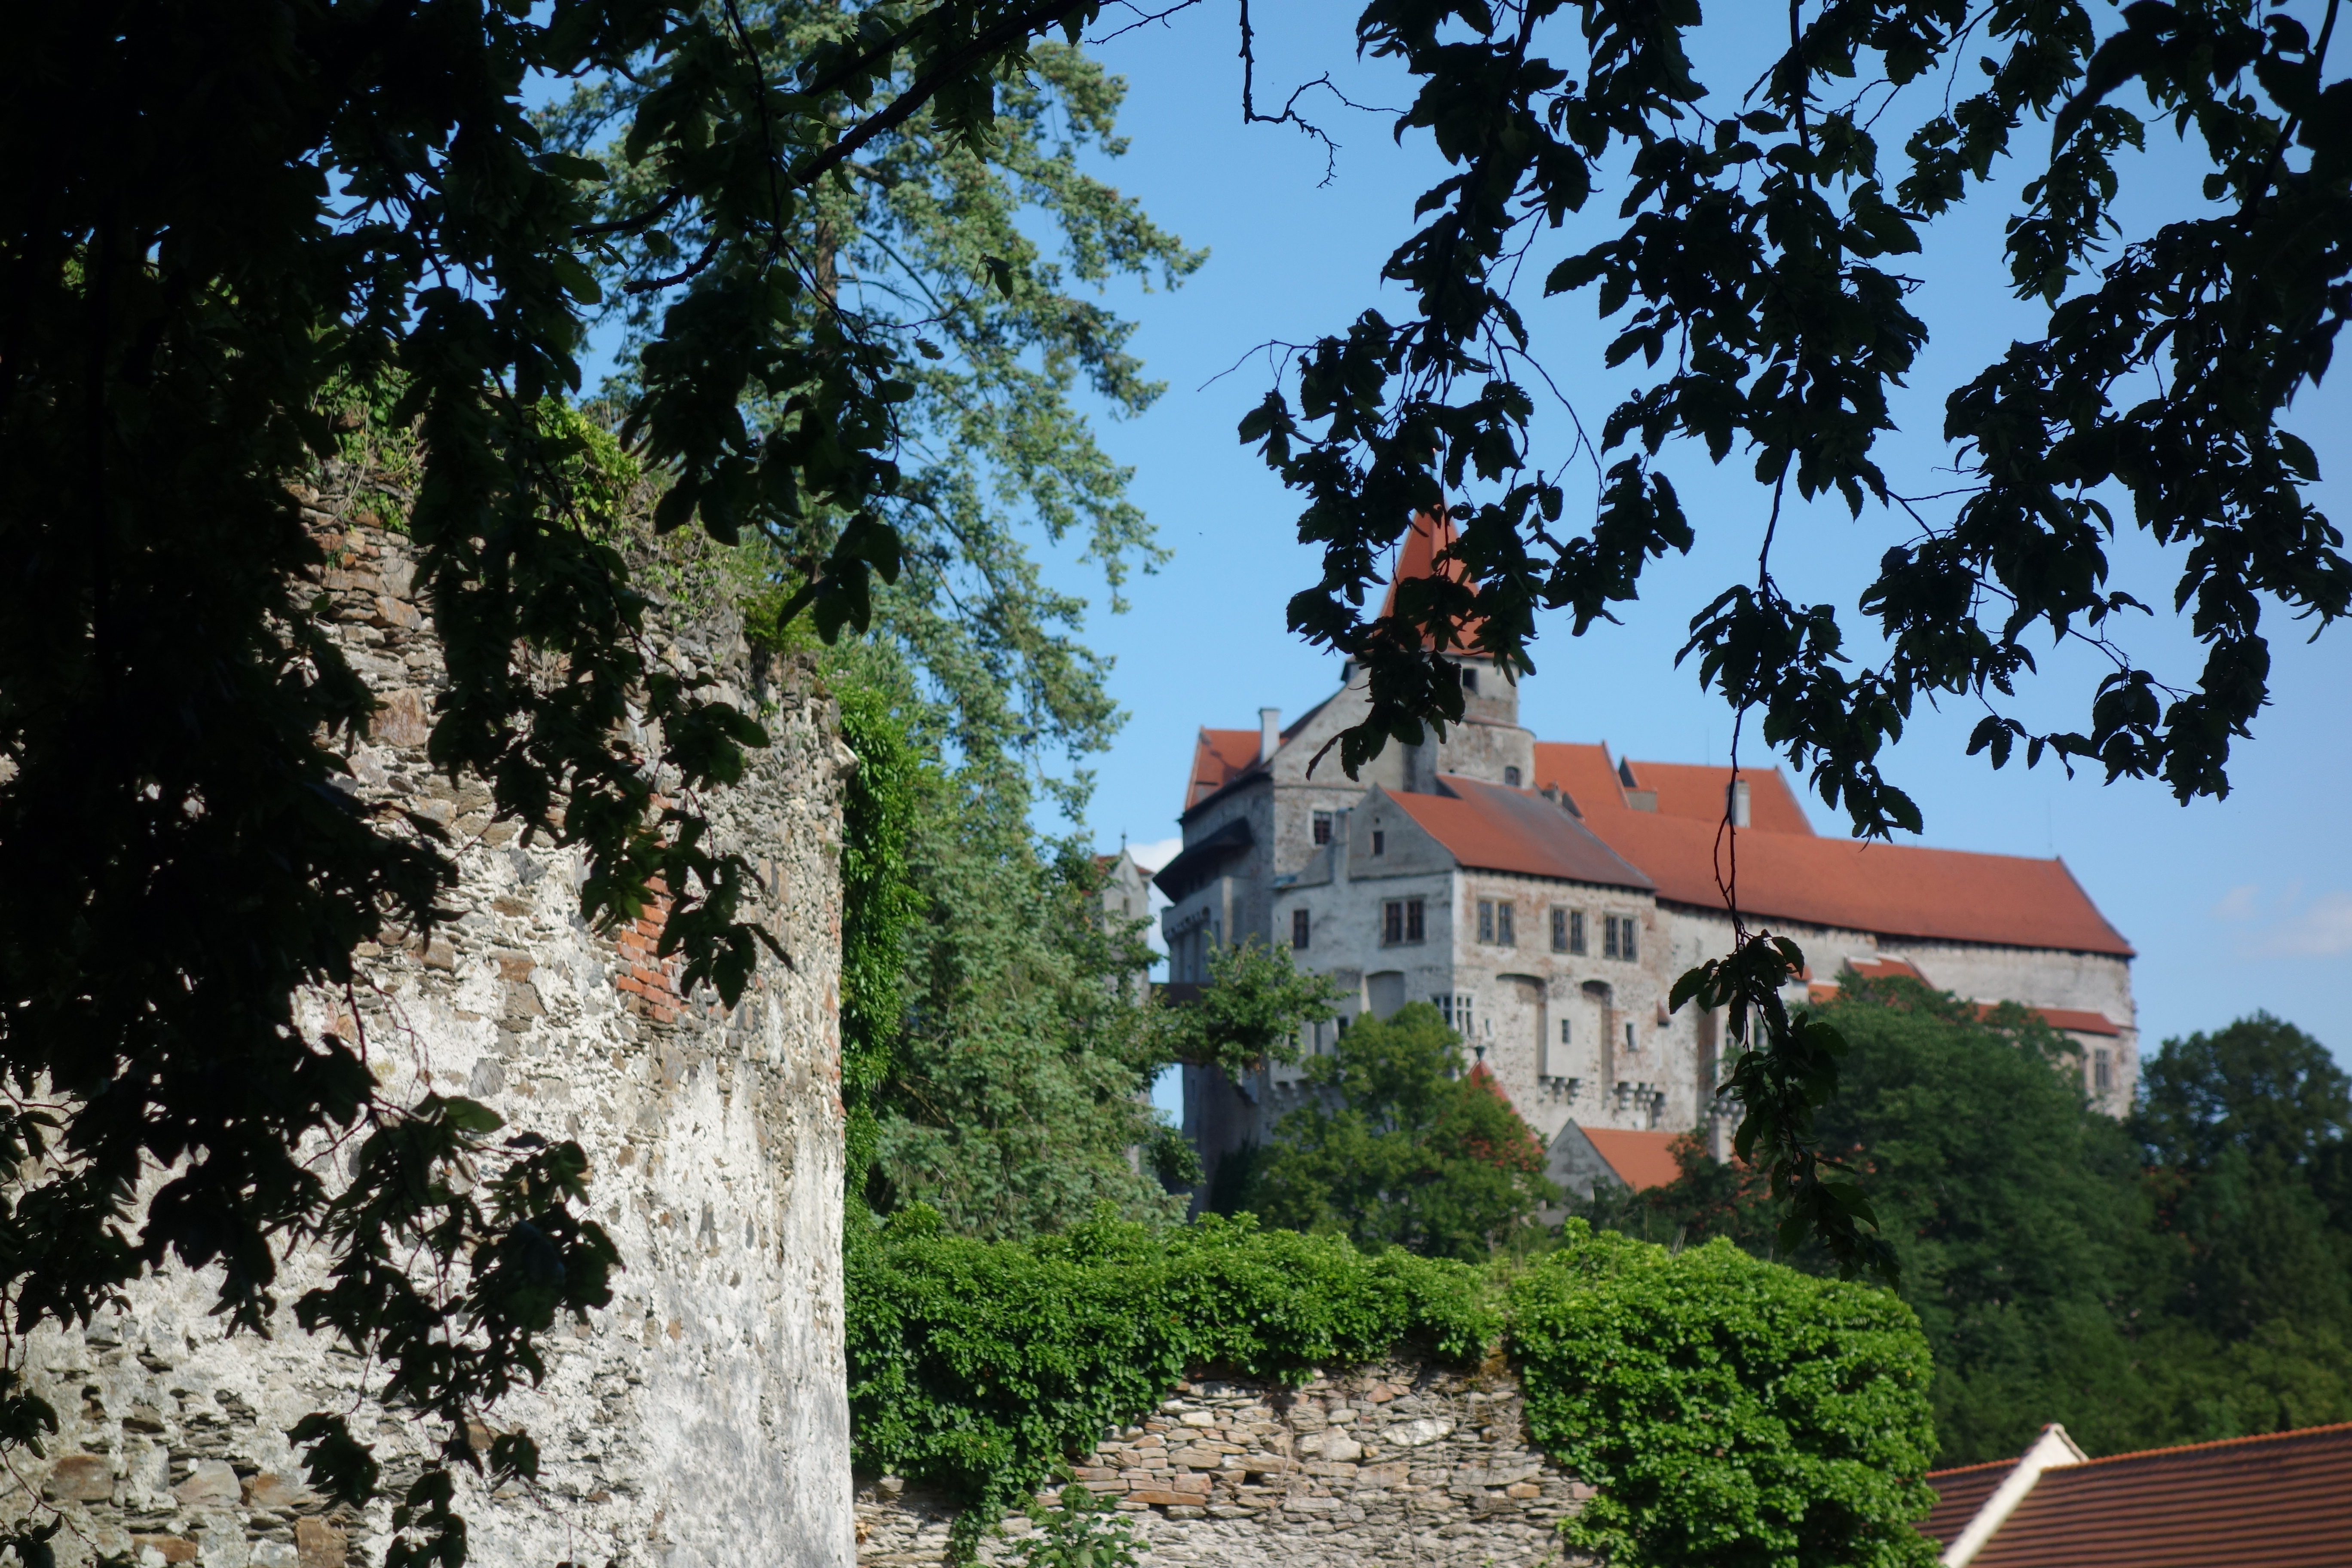 Po naučných stezkách na hrad Pernštejn